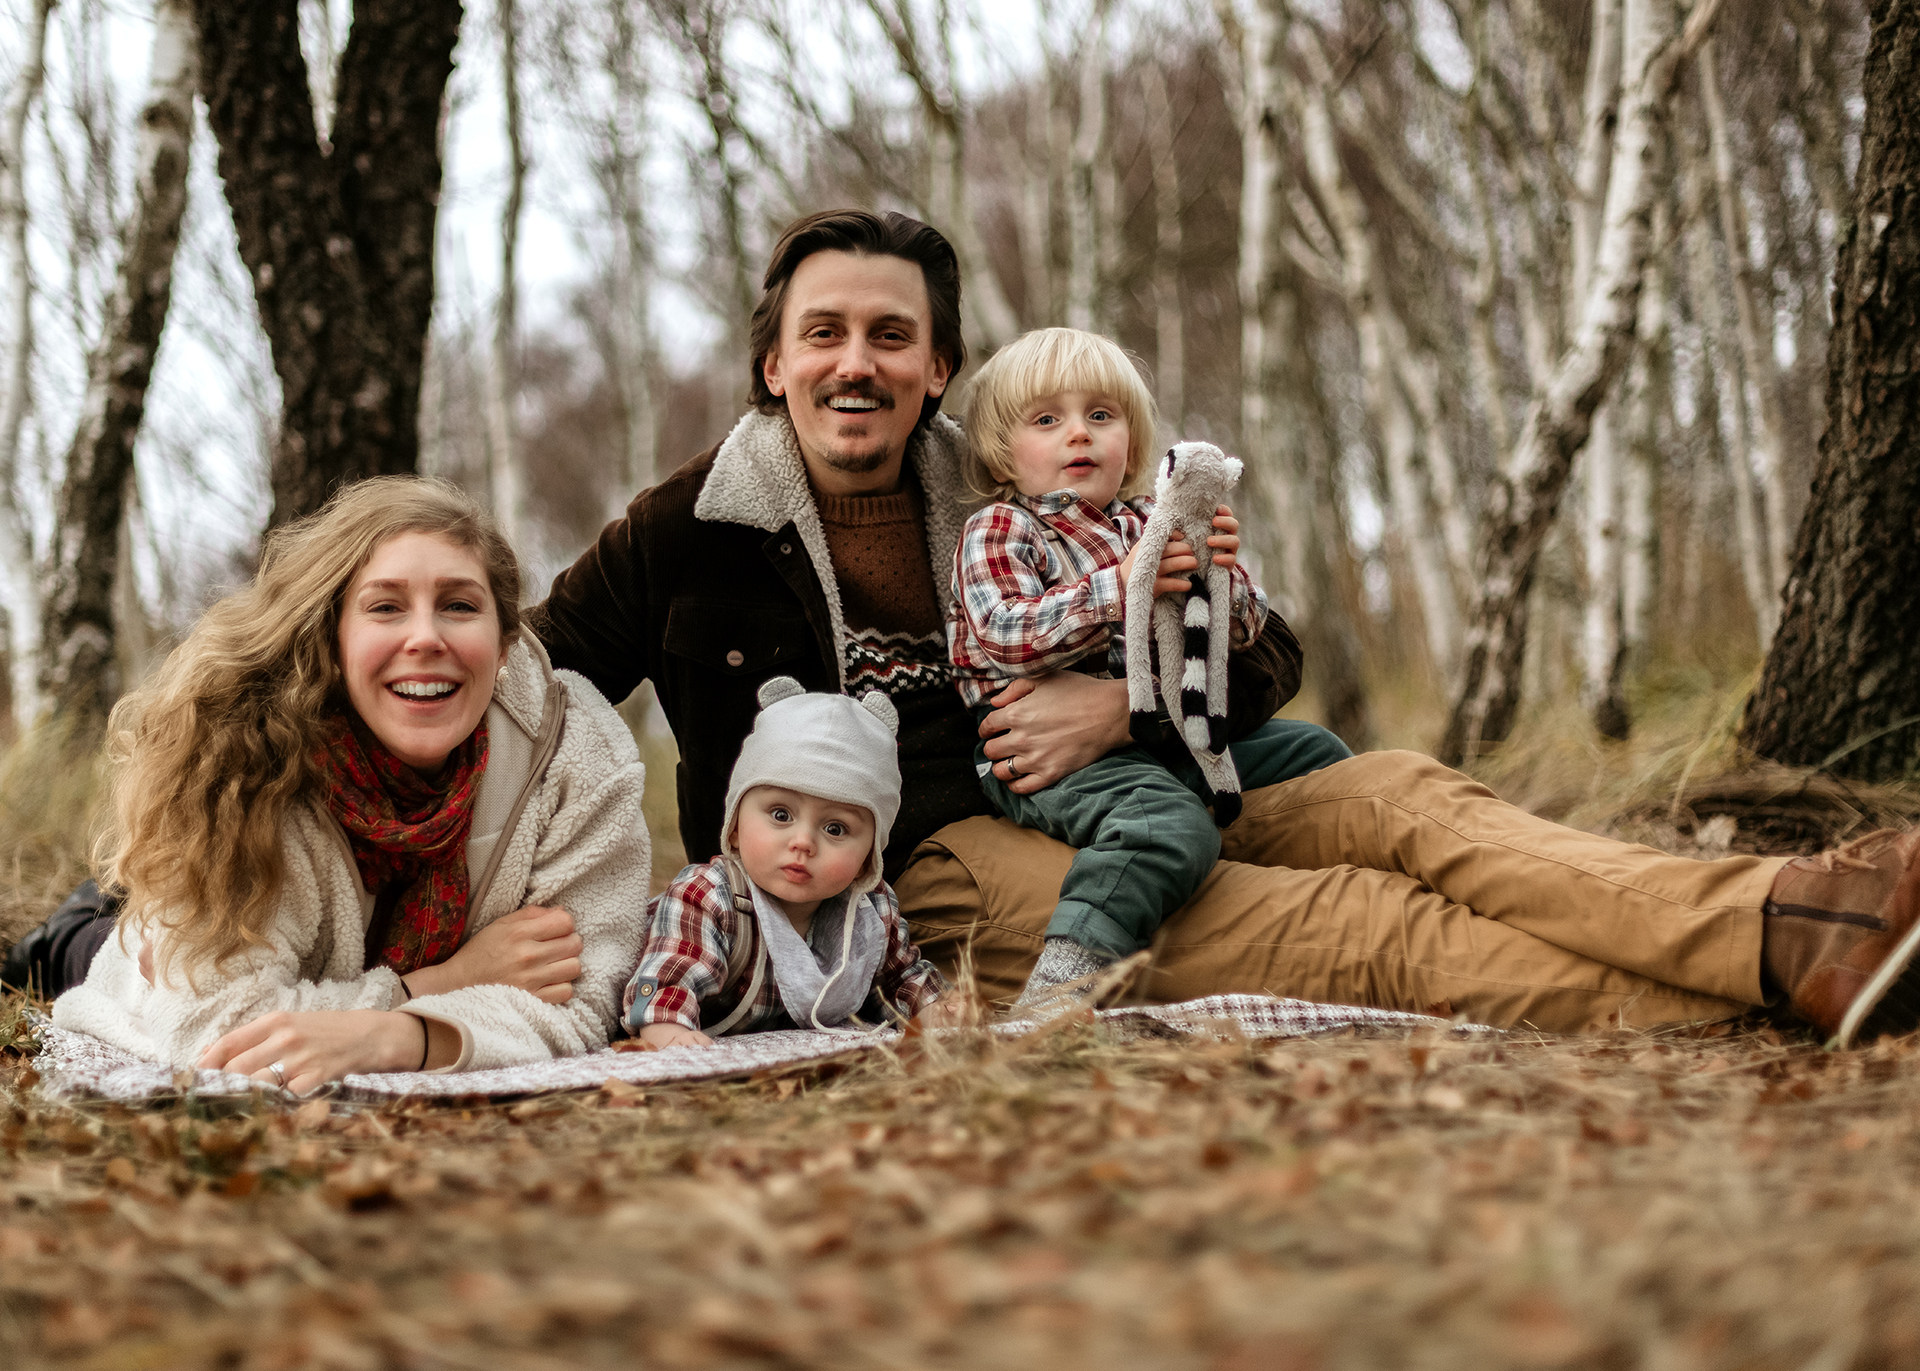 Familjefotografering, Örby Ängar, Helsingborg, familjeporträtt, lekfulla bilder av din familj